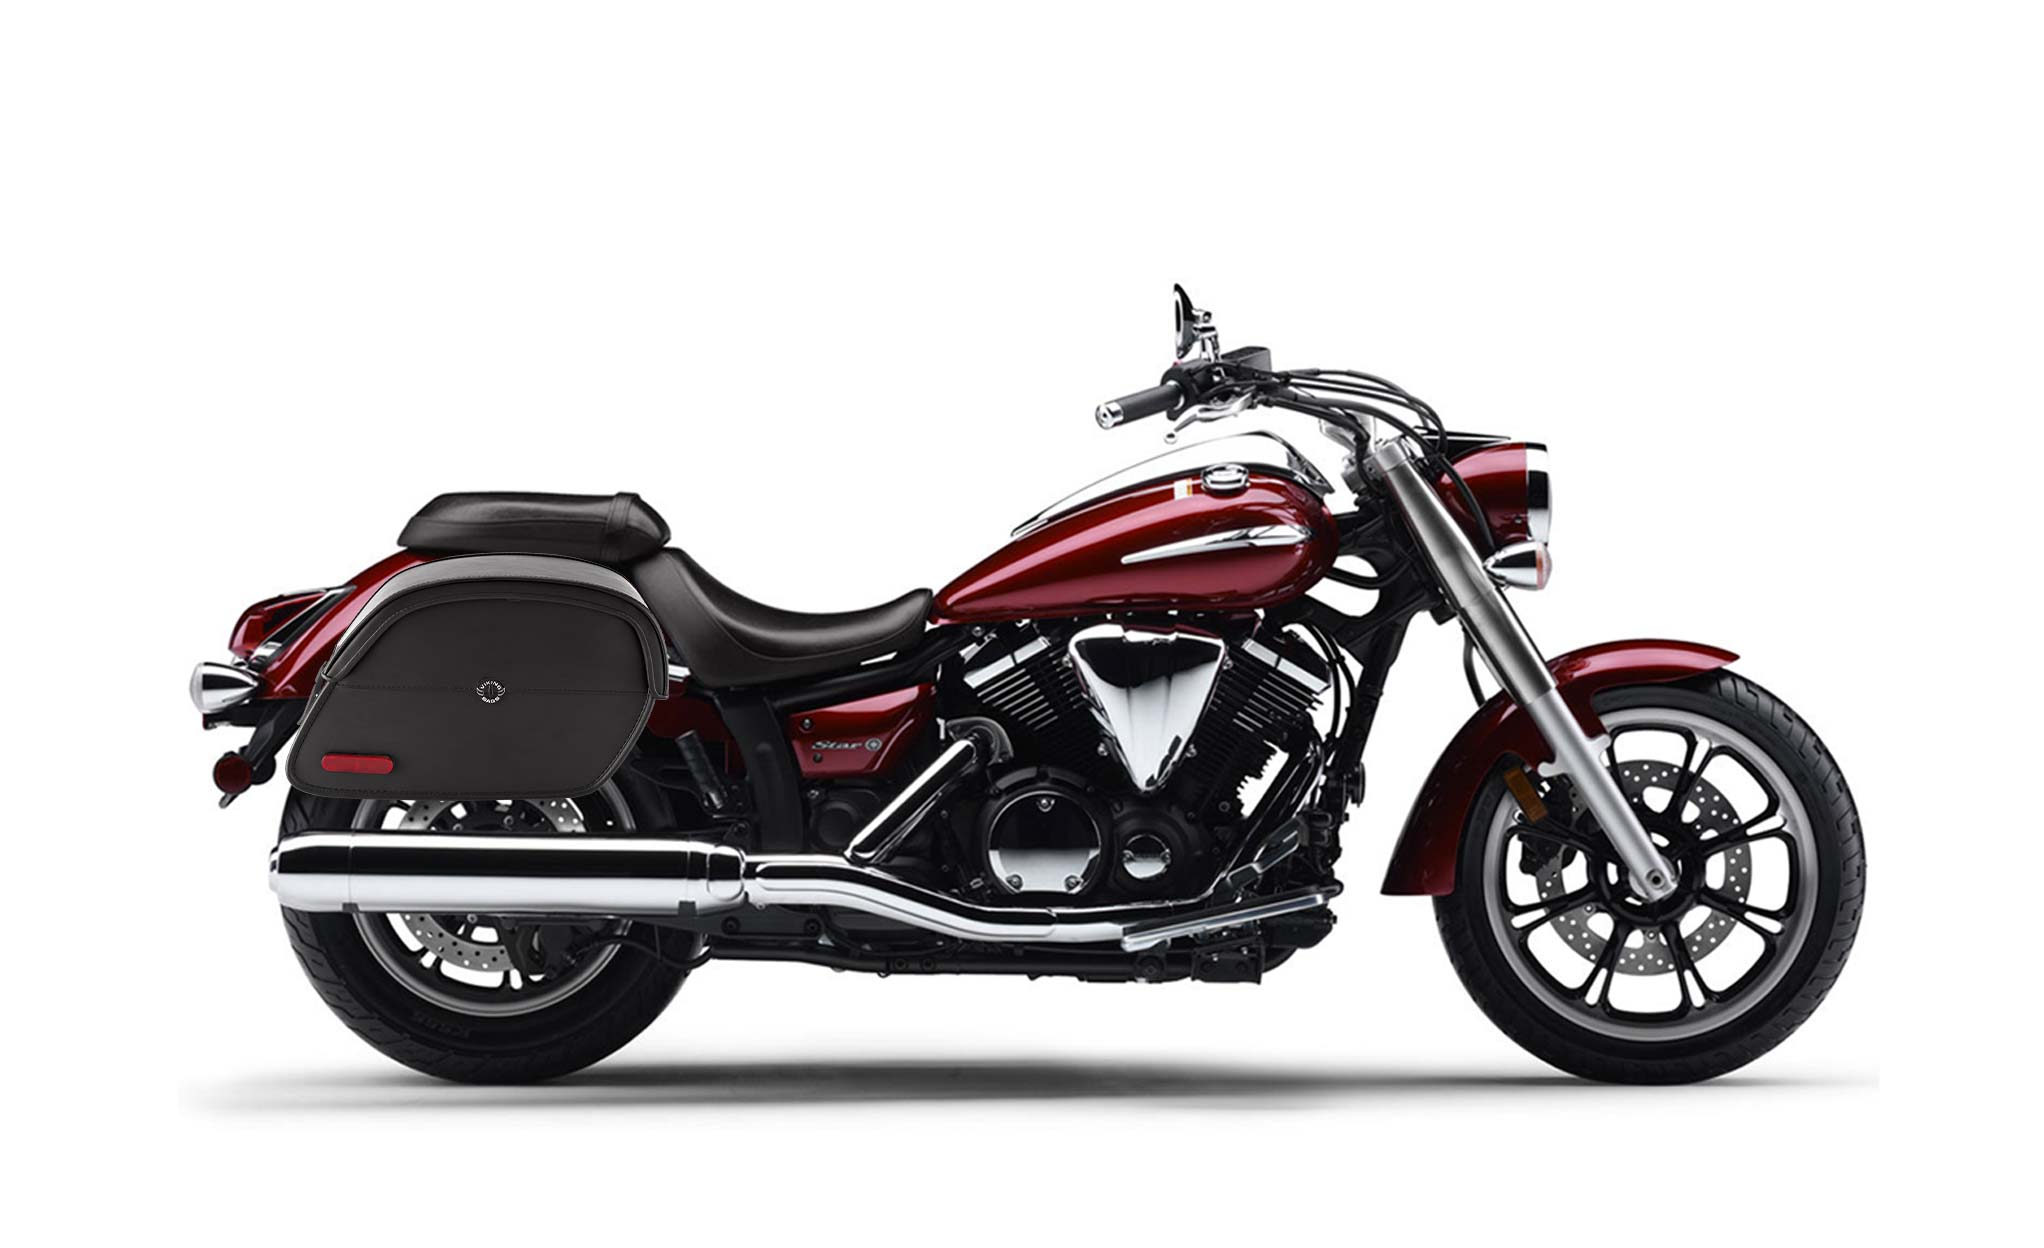 Viking California Large Yamaha V Star 950 Leather Motorcycle Saddlebags on Bike Photo @expand